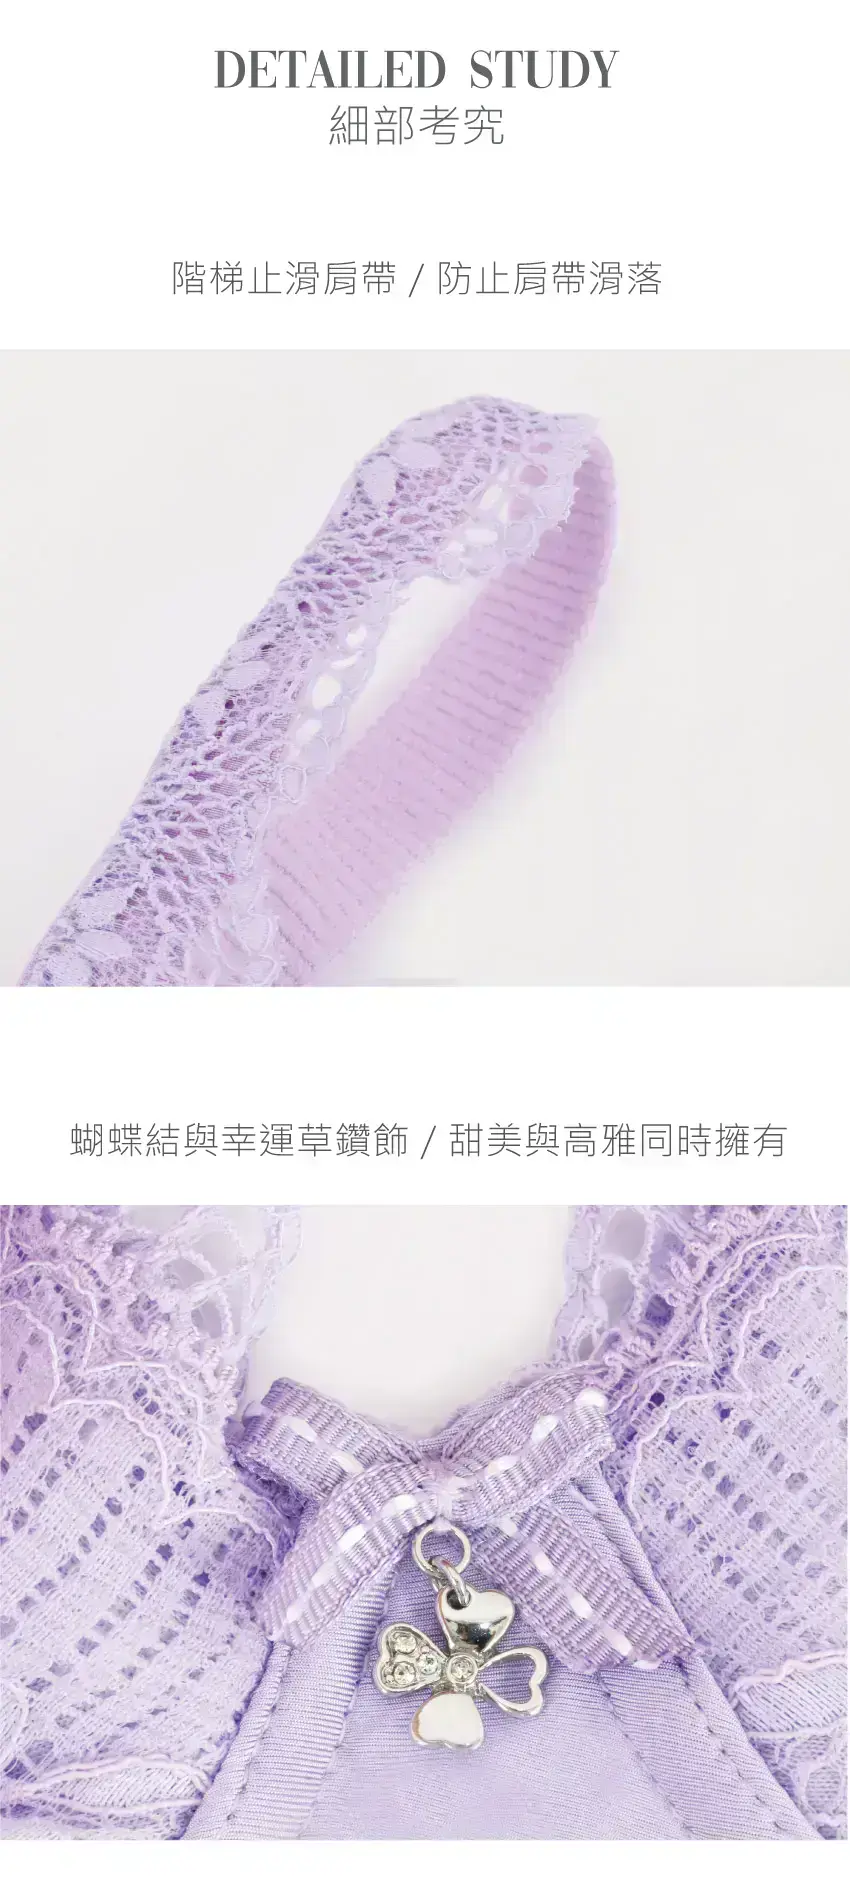 膠原蛋白 水肌保養機能內衣BCDE罩杯(紫繡球)